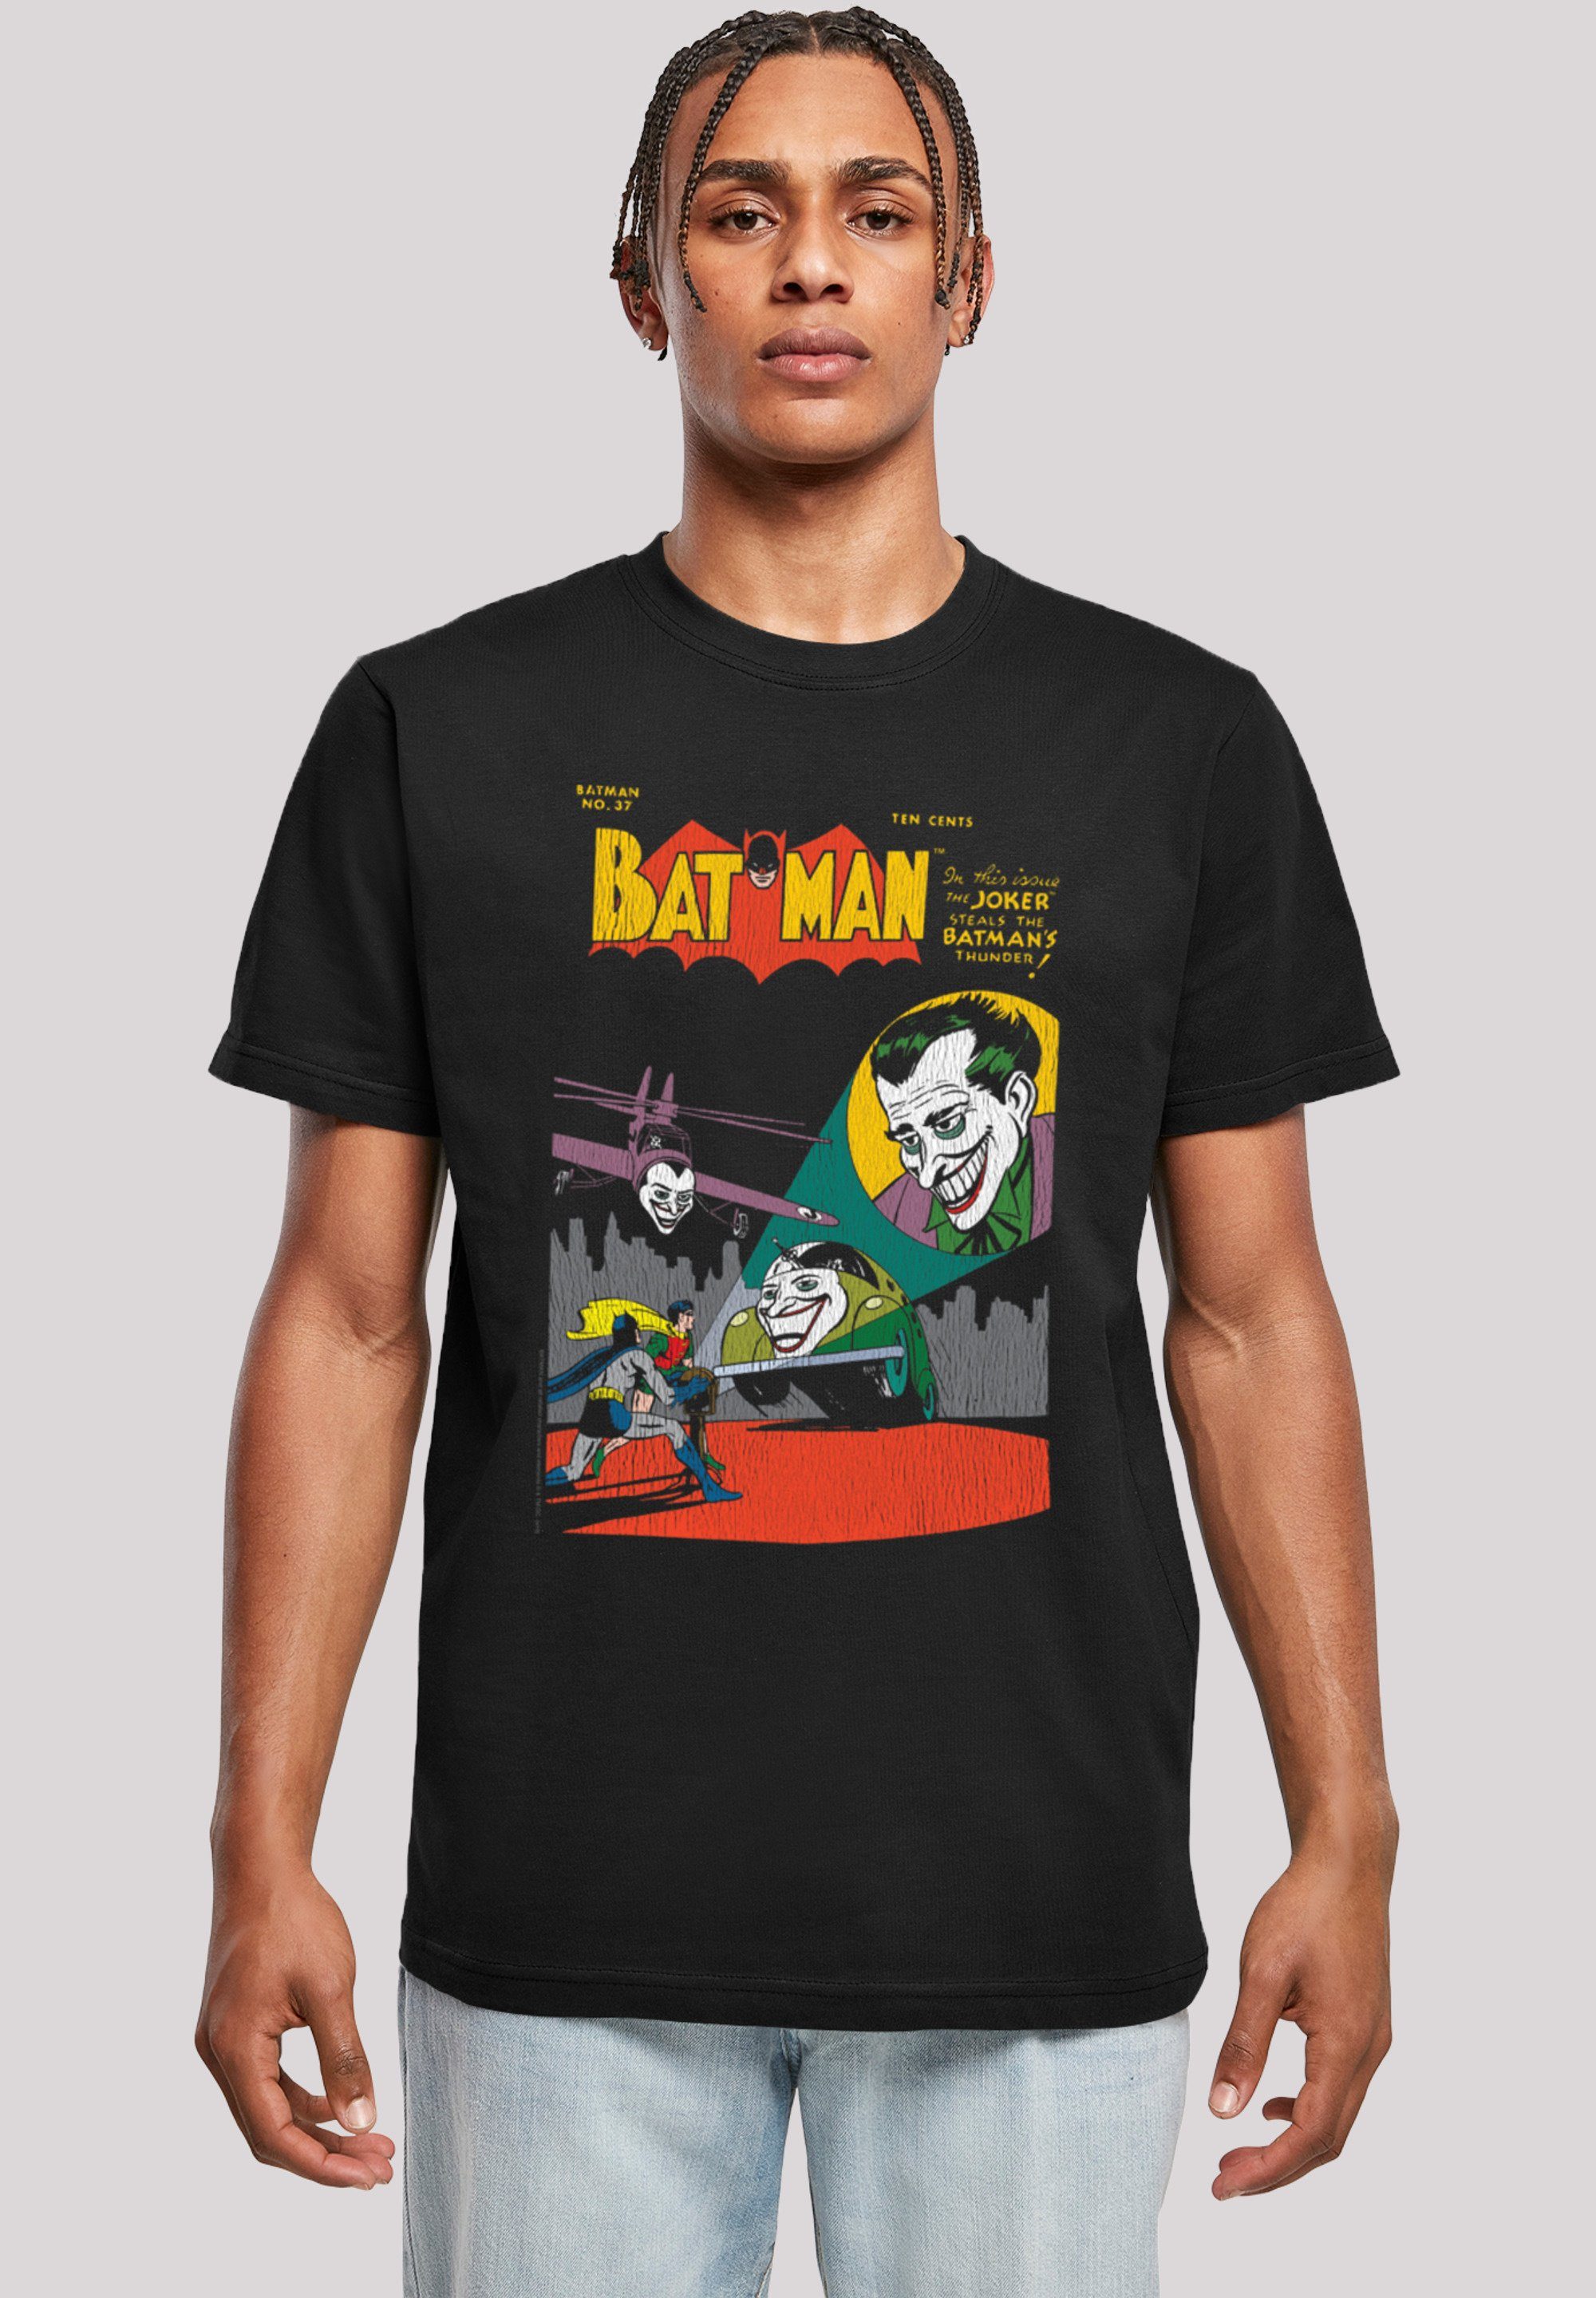 F4NT4STIC T-Shirt DC Comis Superhelden Batman No. 37 Cover Print